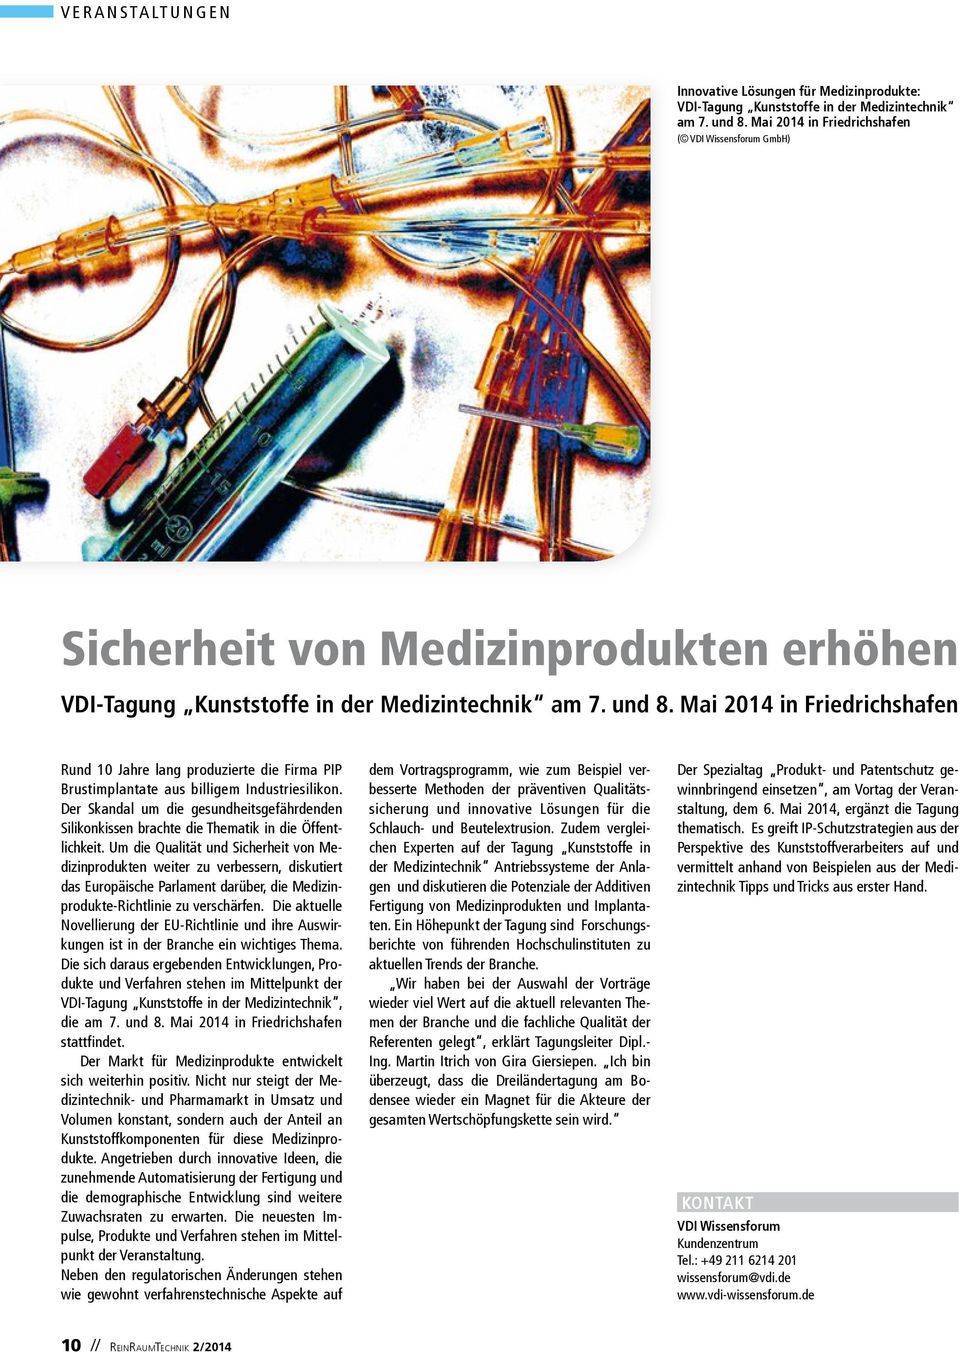 Mai 2014 in Friedrichshafen Rund 10 Jahre lang produzierte die Firma PIP Brustimplantate aus billigem Industriesilikon.